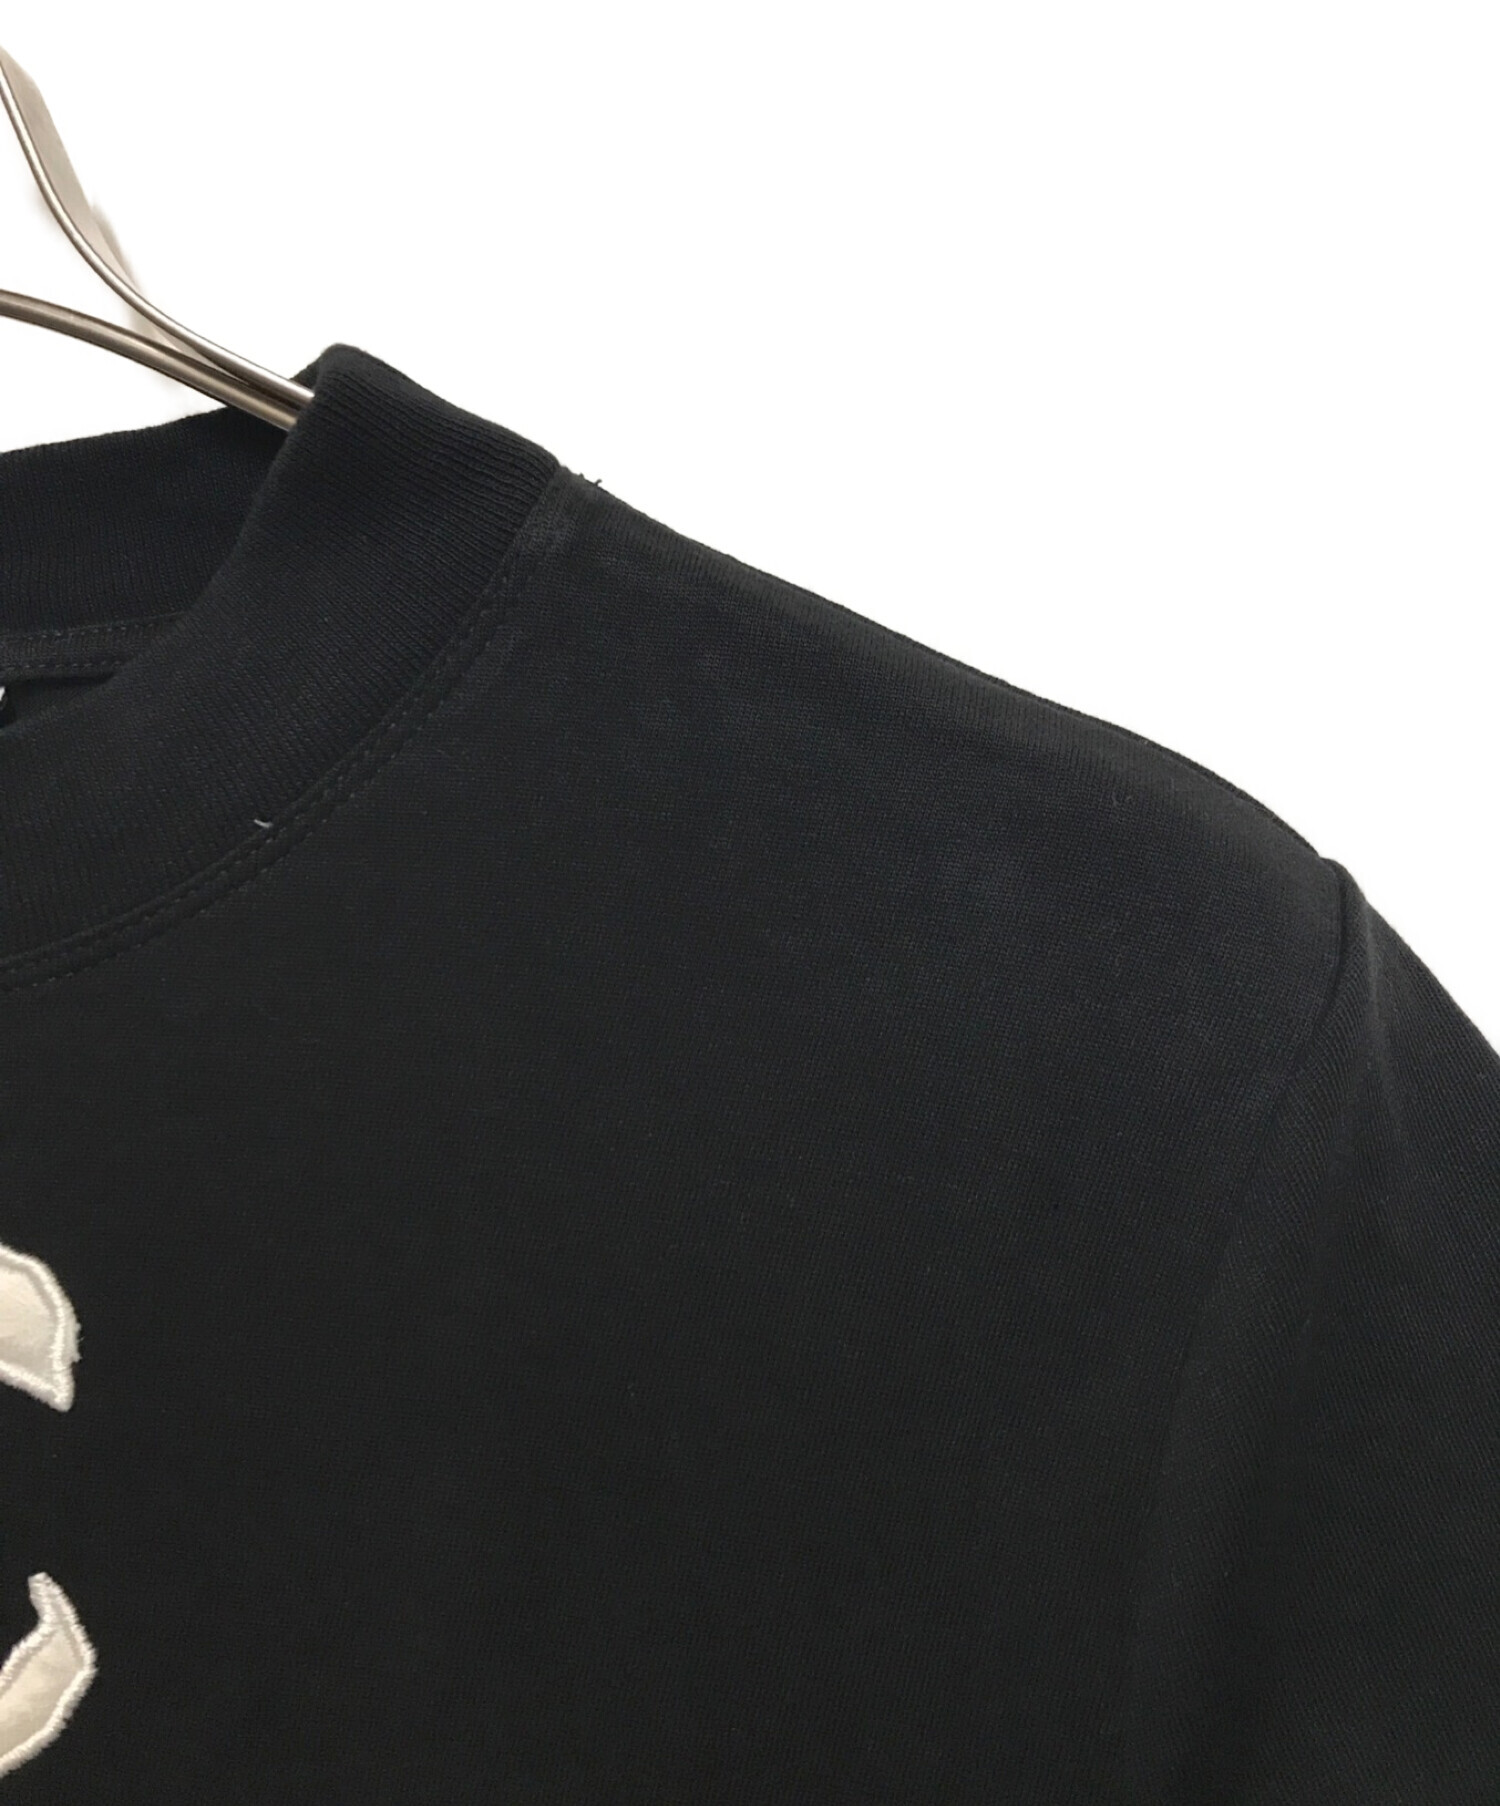 中古・古着通販】courreges (クレージュ) ロゴTシャツ ブラック サイズ